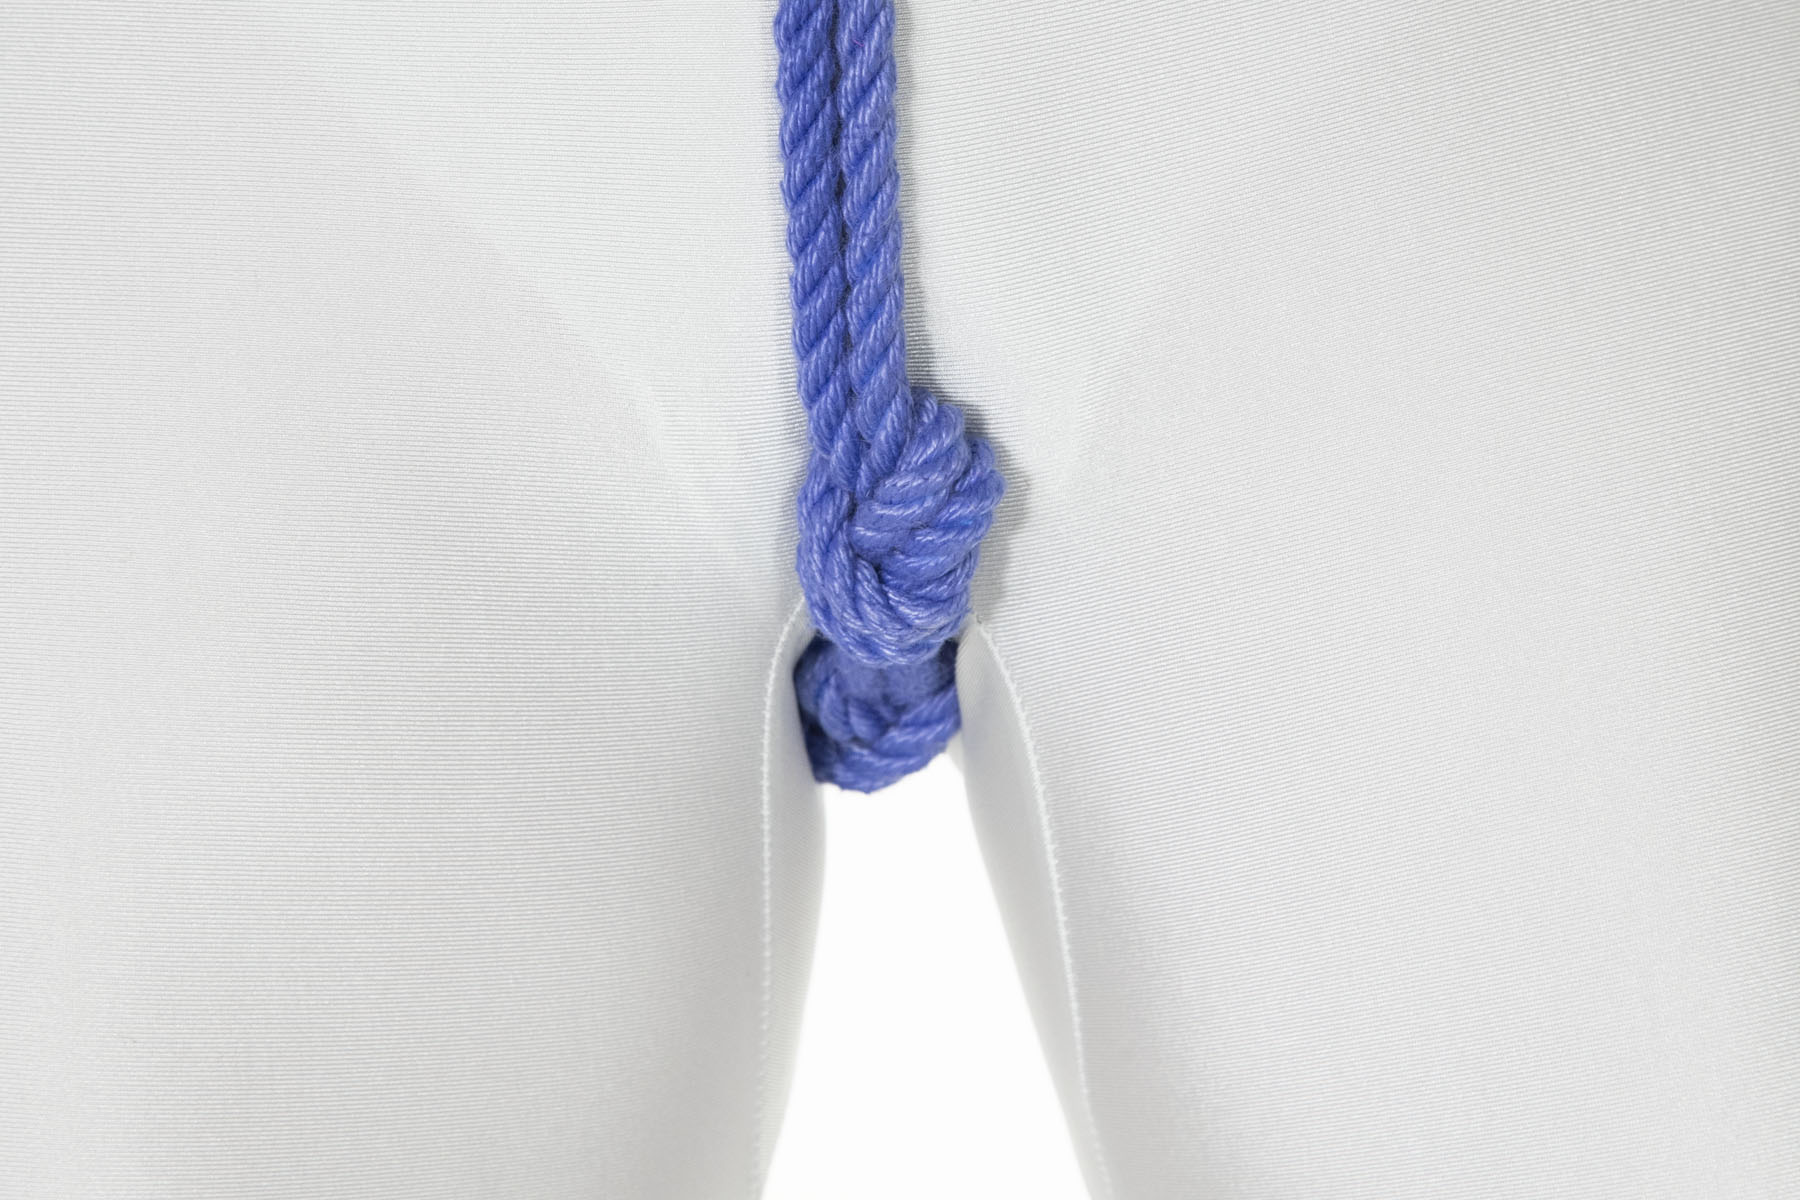 domenico lattanzio recommends how to crotch rope pic